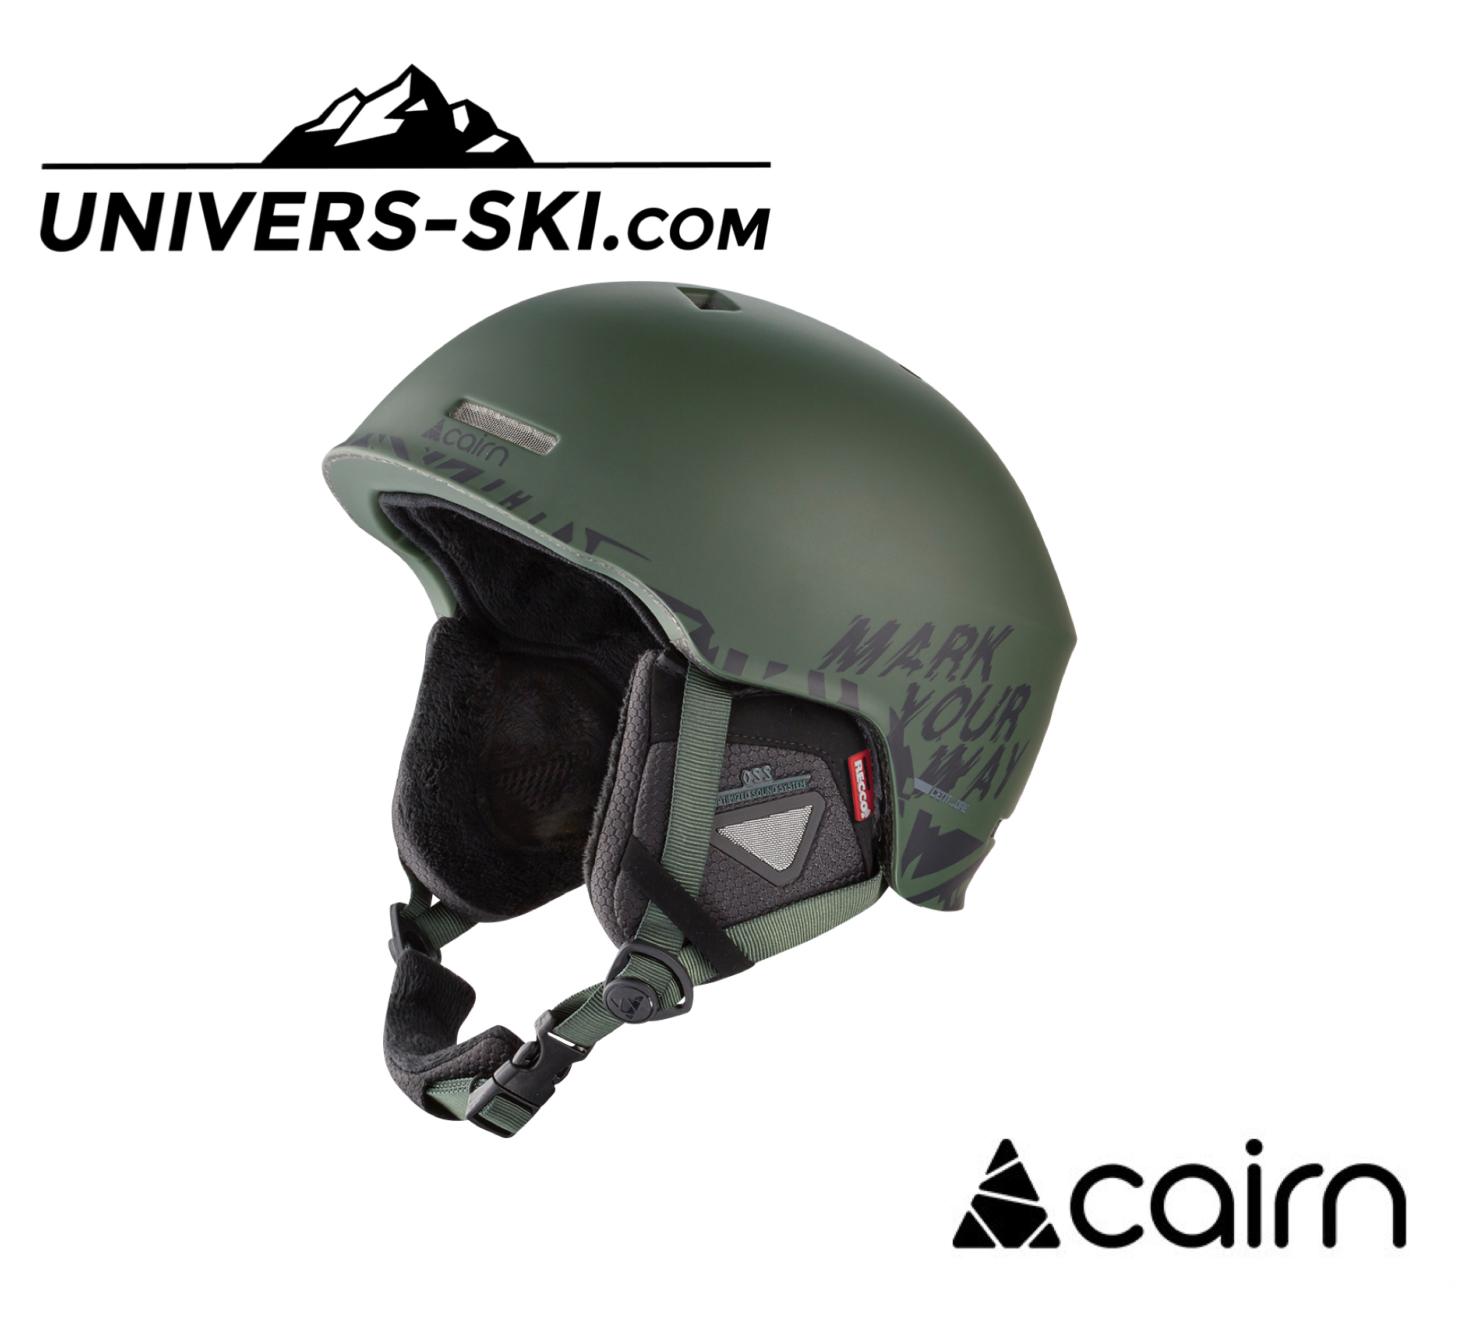 Cairn Centaure, casque de ski adulte.